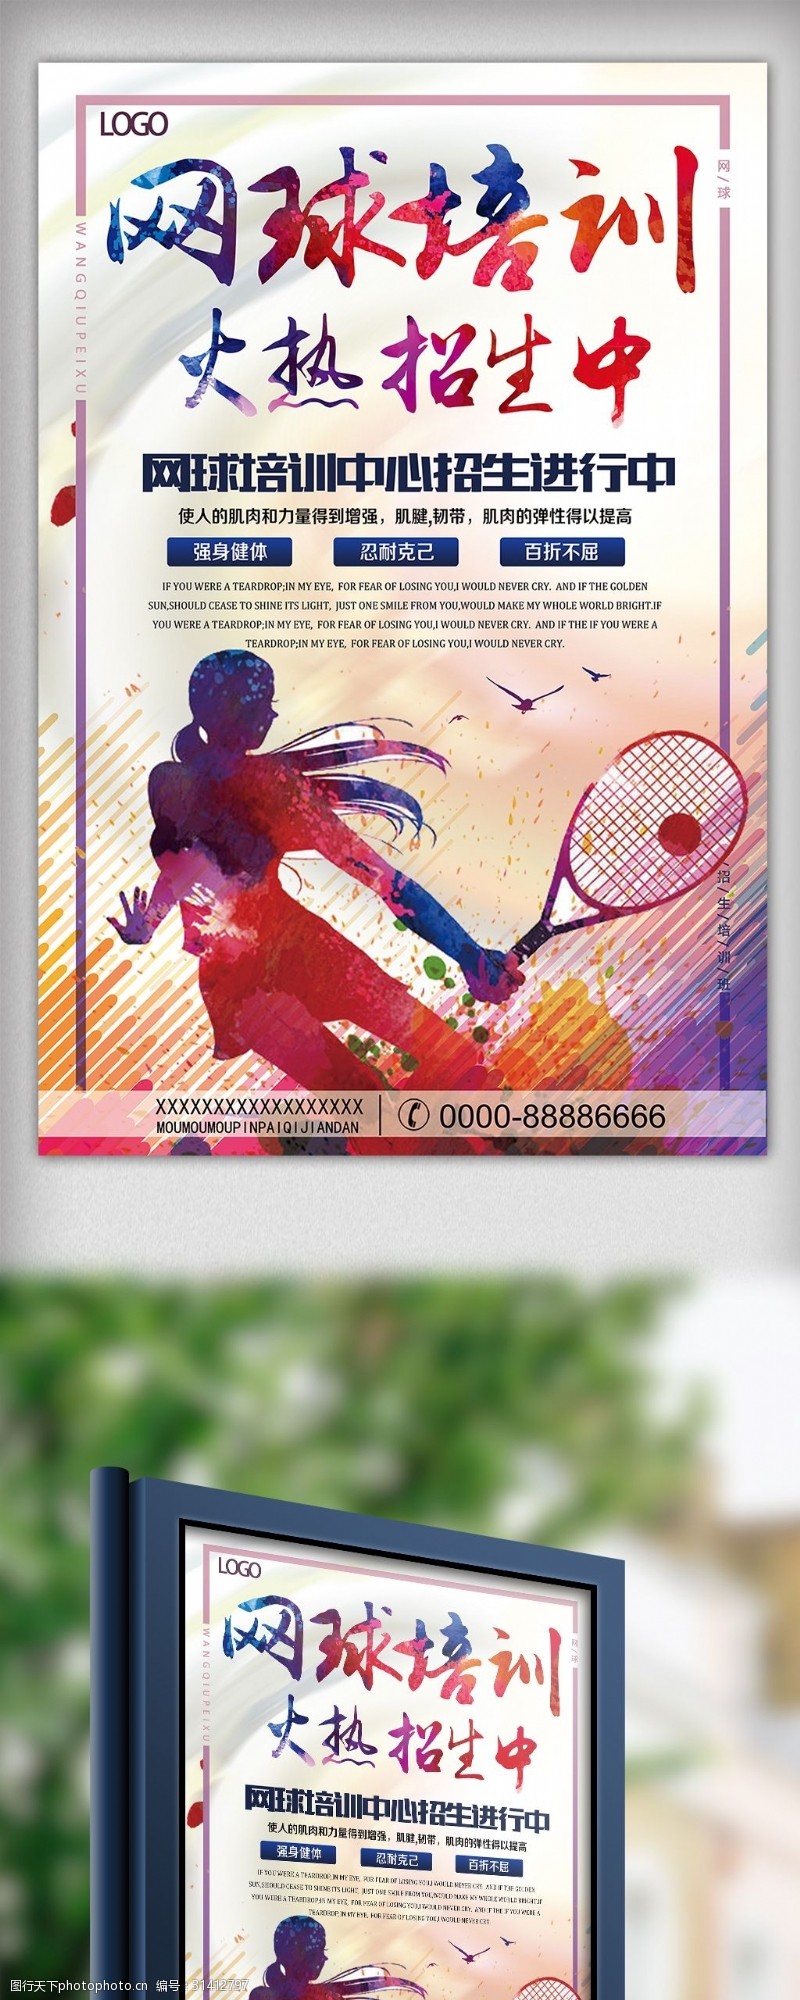 寒假招生宣传网球培训招生宣传海报模板下载